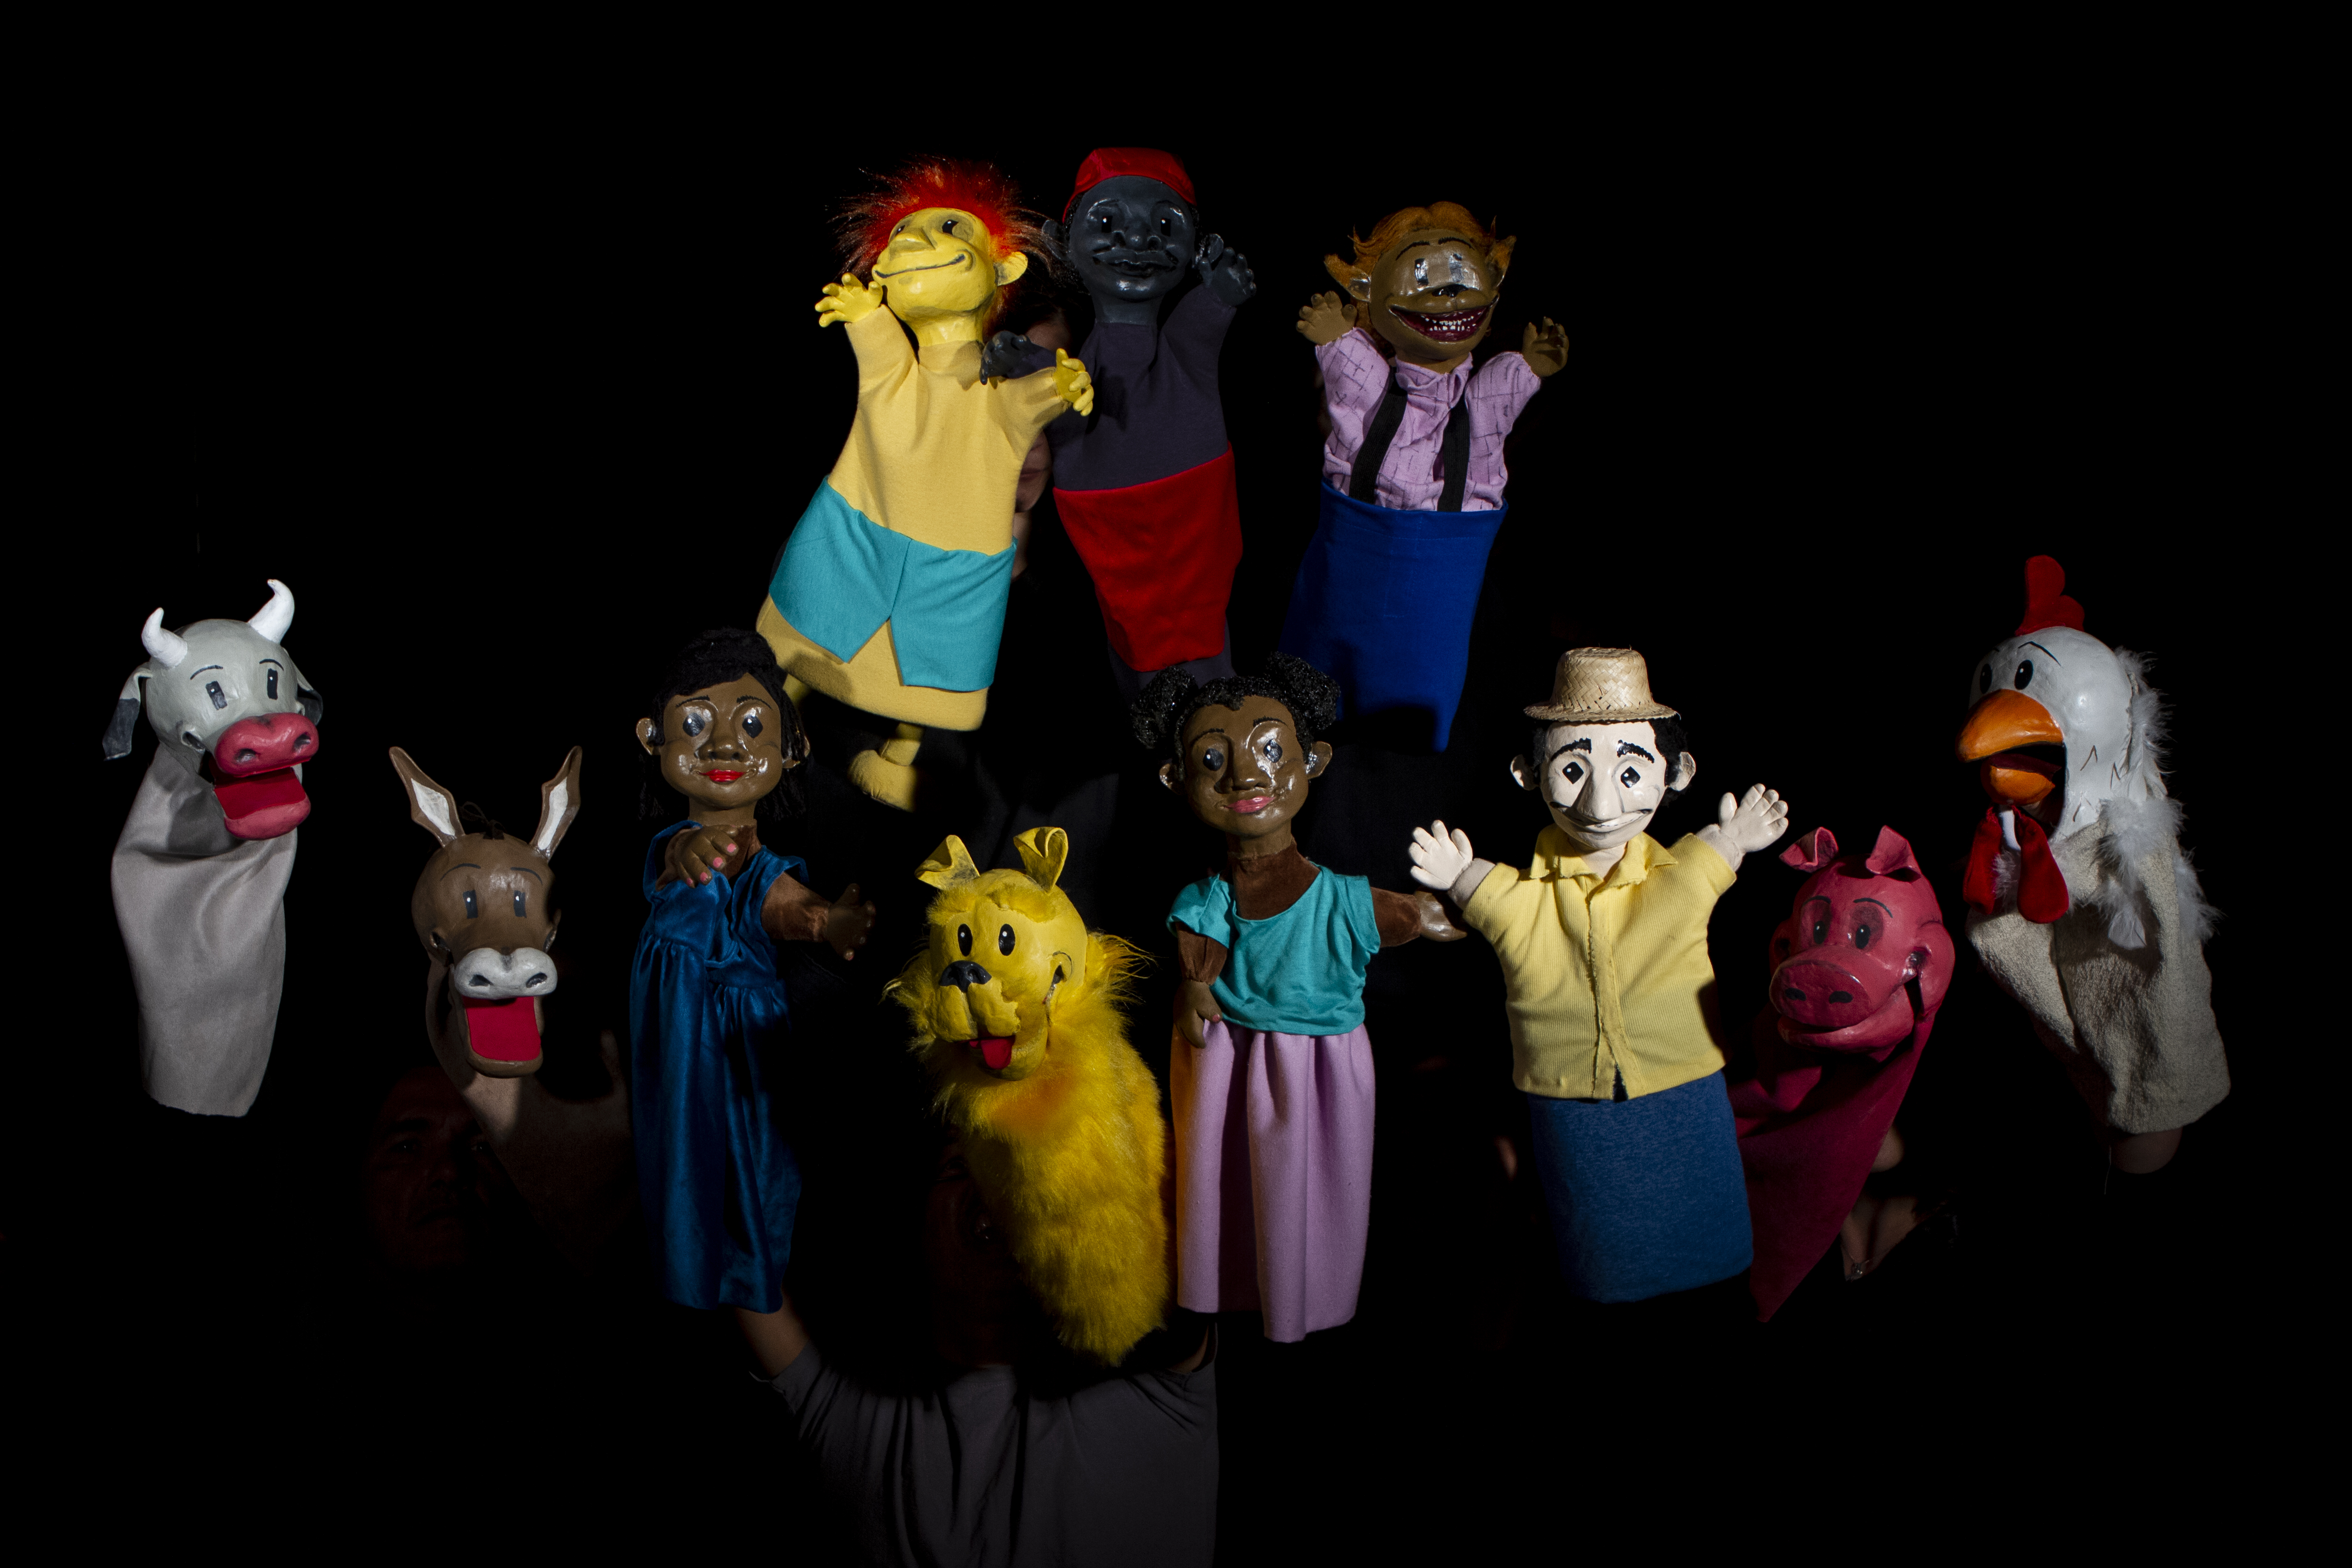 Imagem de nove fantoches usados no espetáculo, personagens como saci, curupira e lobisomem podem ser identificados.